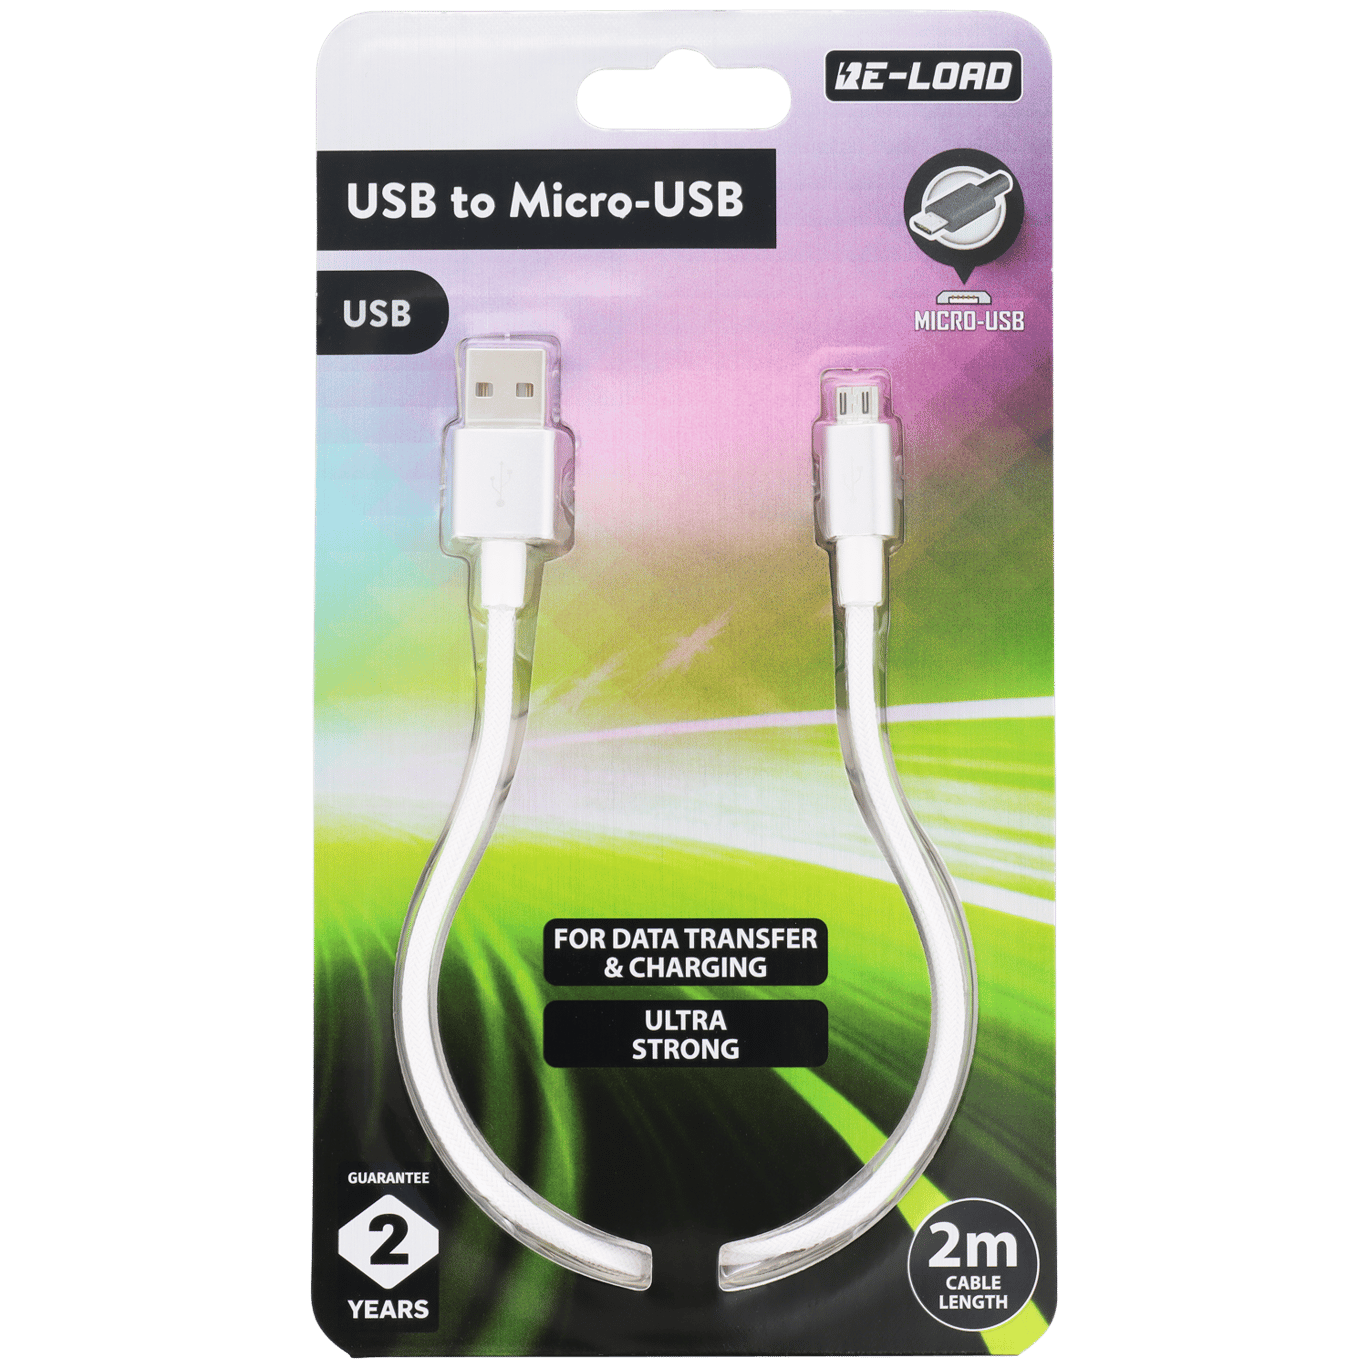 Cable con micro-USB Re-load